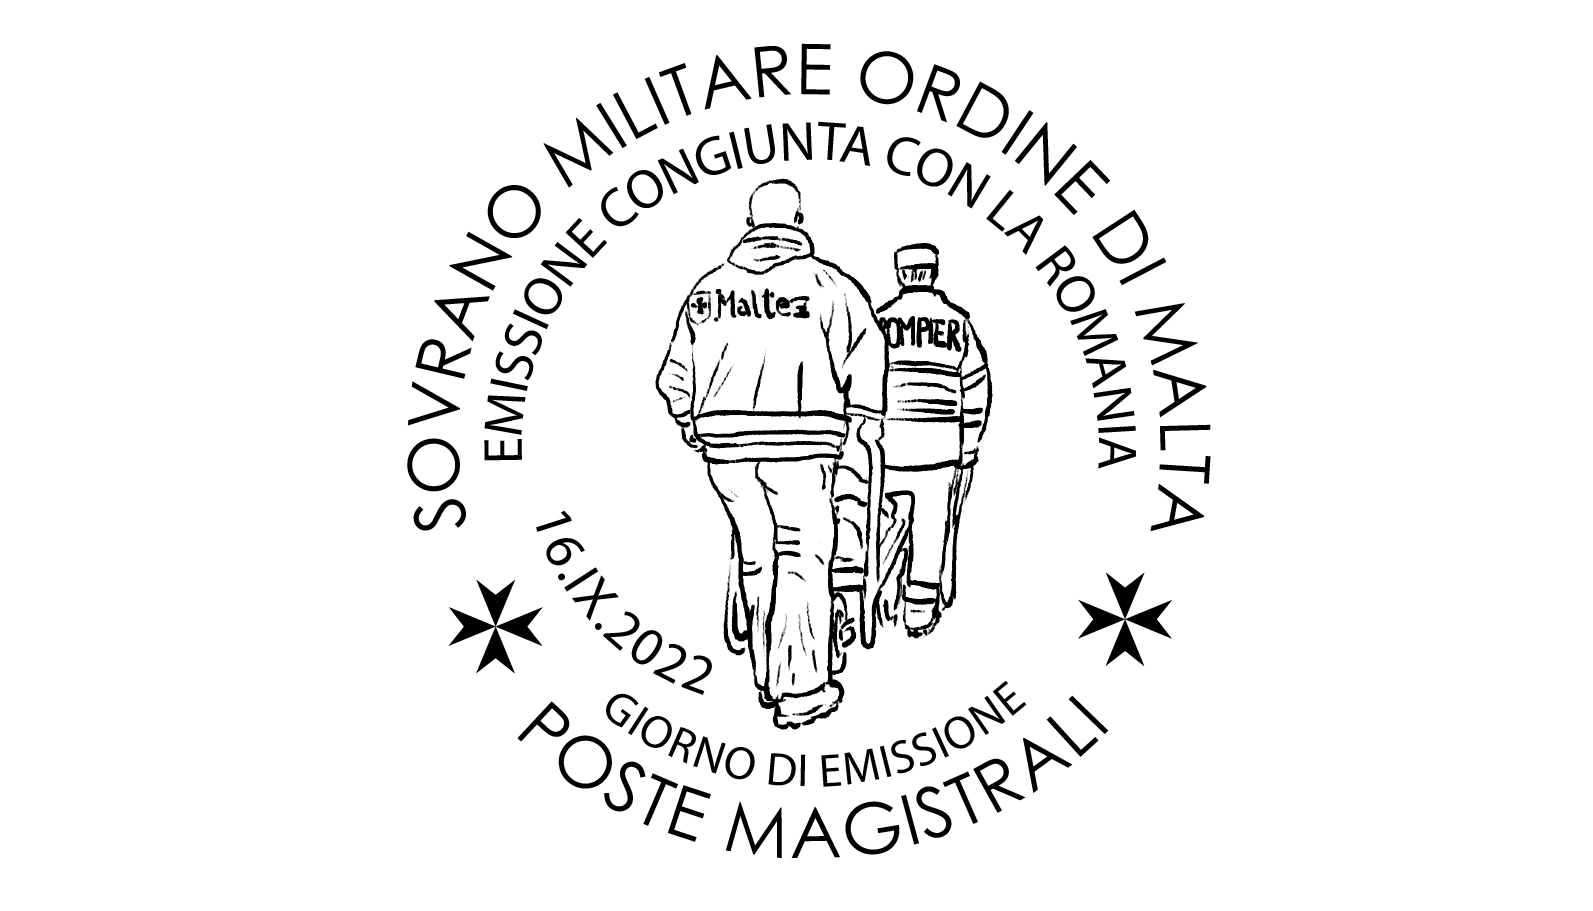 Annullo Giorno di Emissione – Le attività dell’Ordine di Malta in Romania, nel 90° anniversario delle relazioni diplomatiche tra il Sovrano Ordine di Malta e la Romania (emissione congiunta con la Romania)